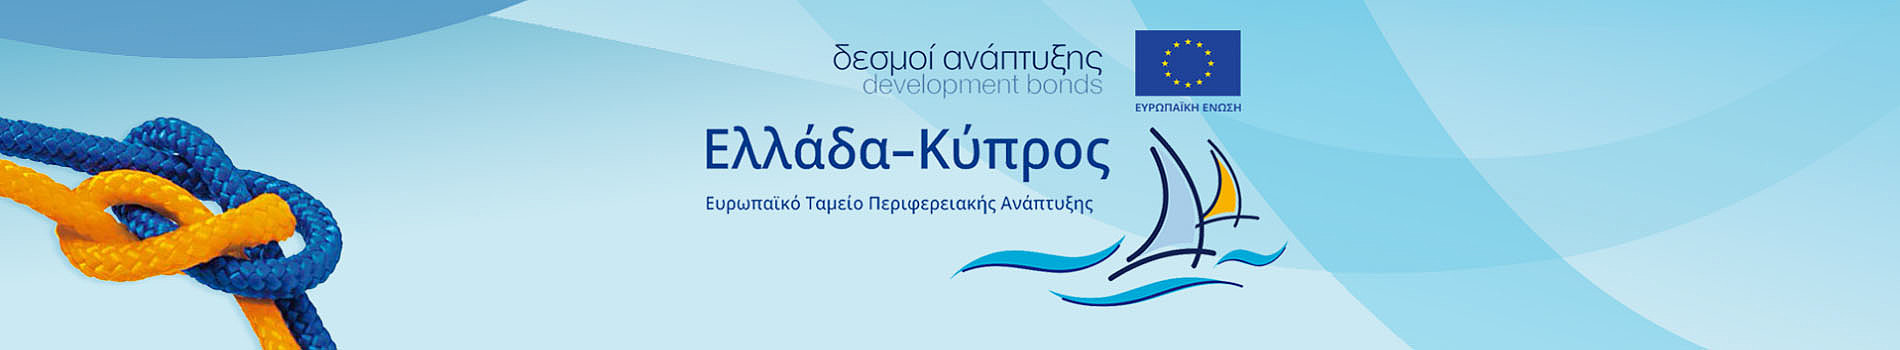 Πρόγραμμα Συνεργασίας Interreg V-A “Ελλάδα-Κύπρος 2014-2020